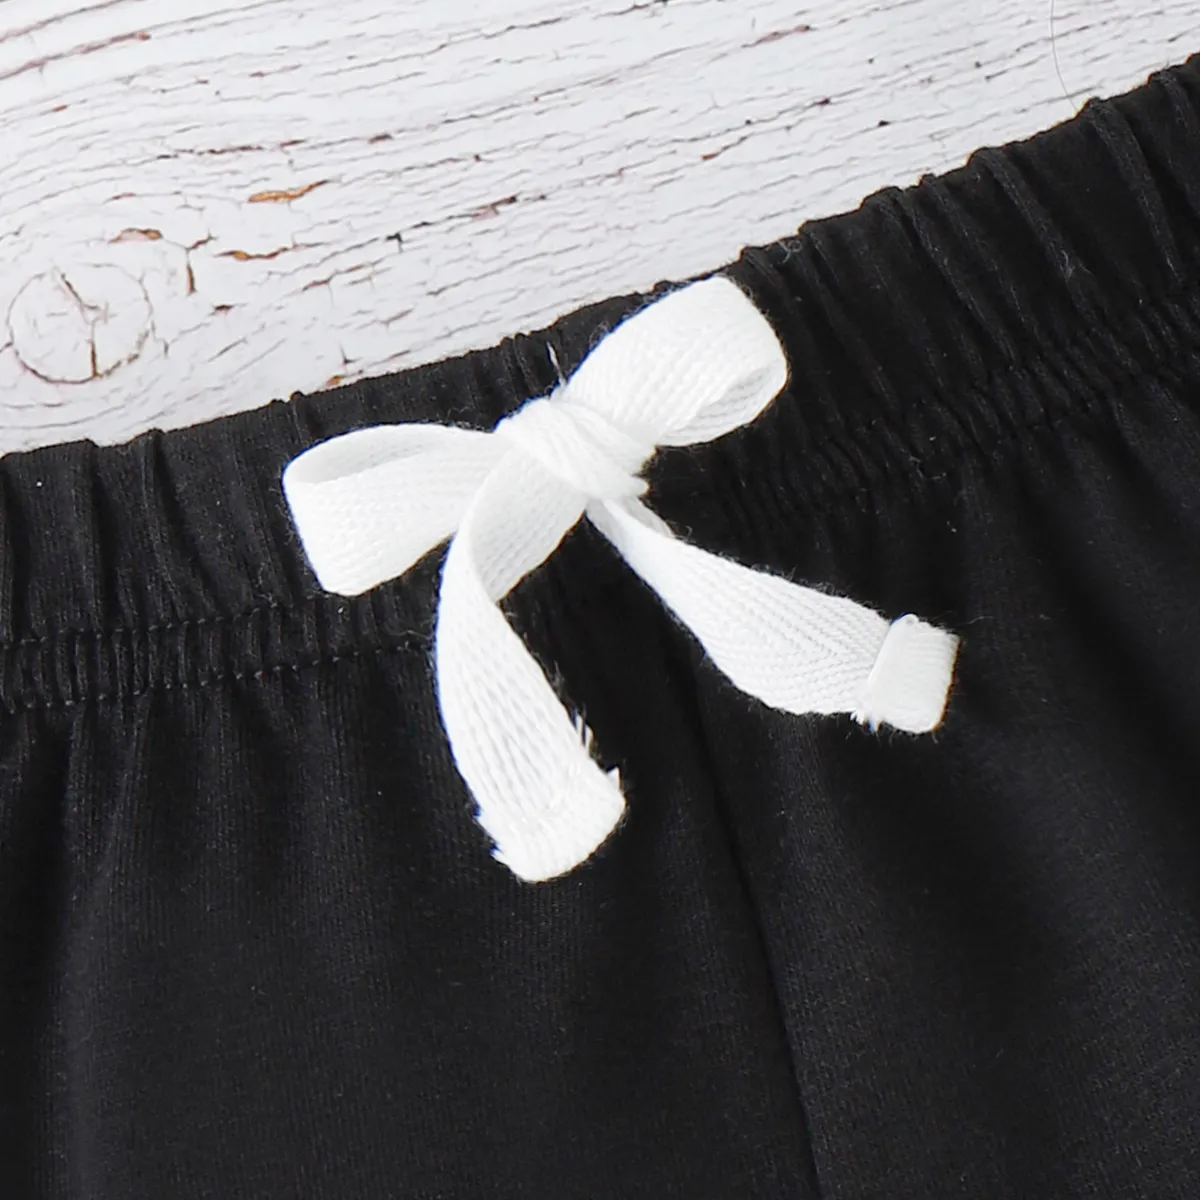 Baby Boy/Girl Solid Elasticized Waist Shorts Black big image 1